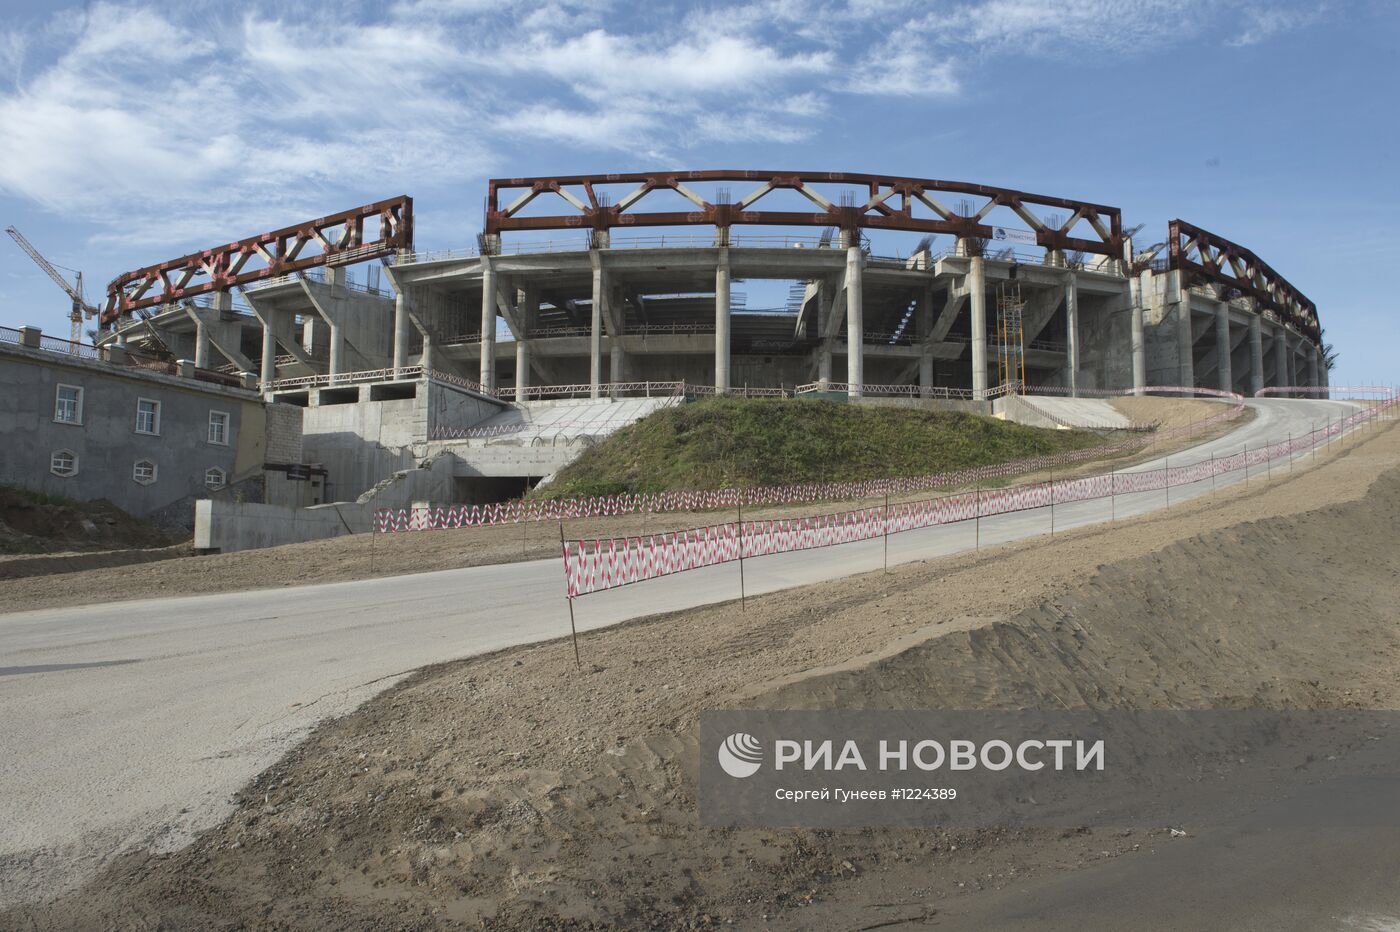 Строящийся стадион "Зенит-Арена" в Санкт-Петербурге